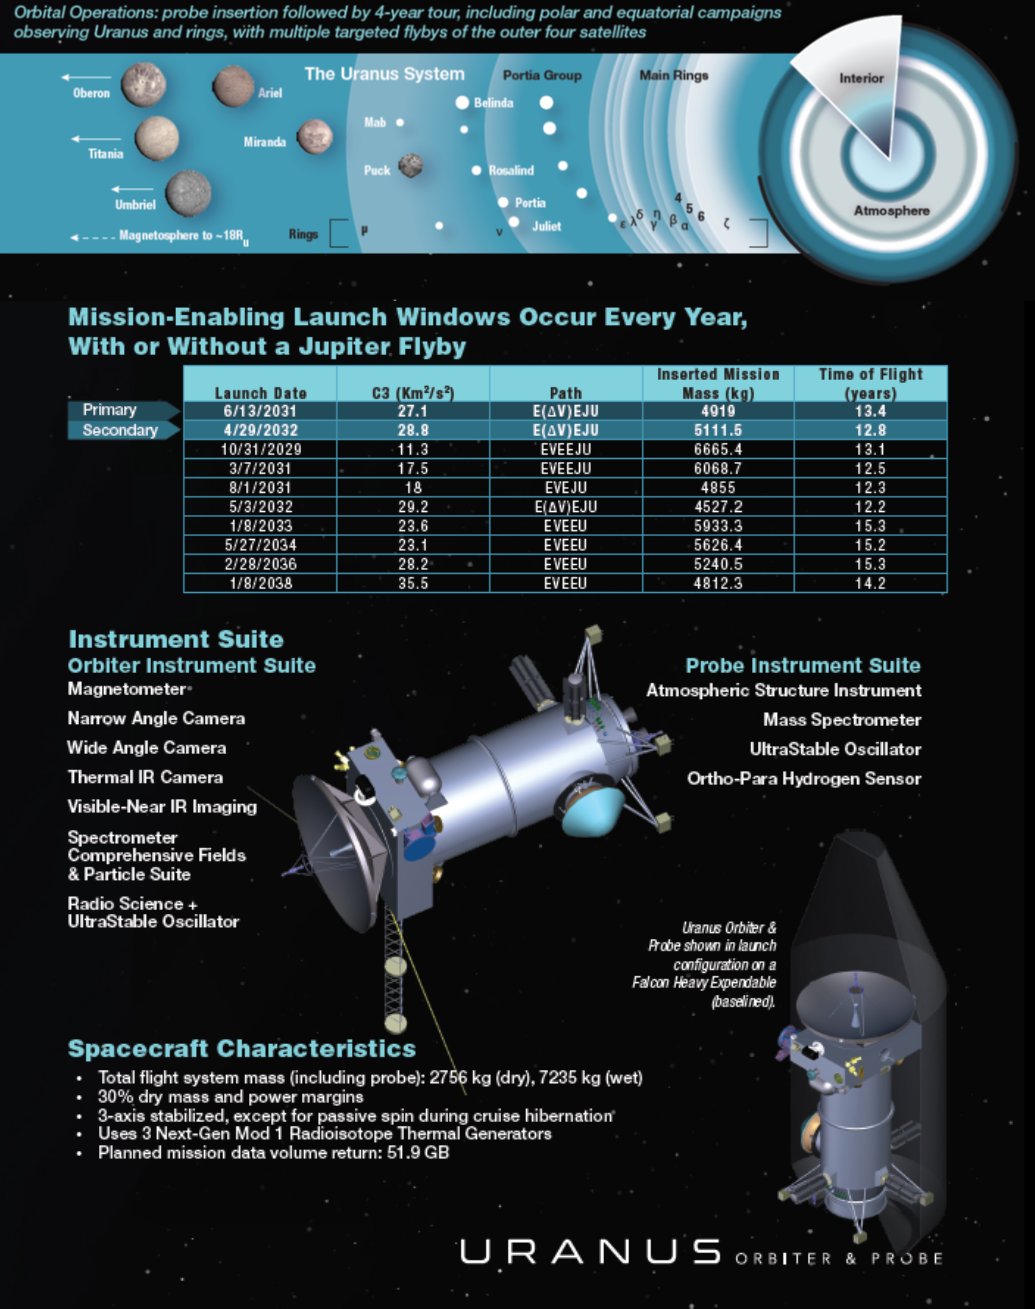 Uranus orbiter and probe mission 2020 decadal